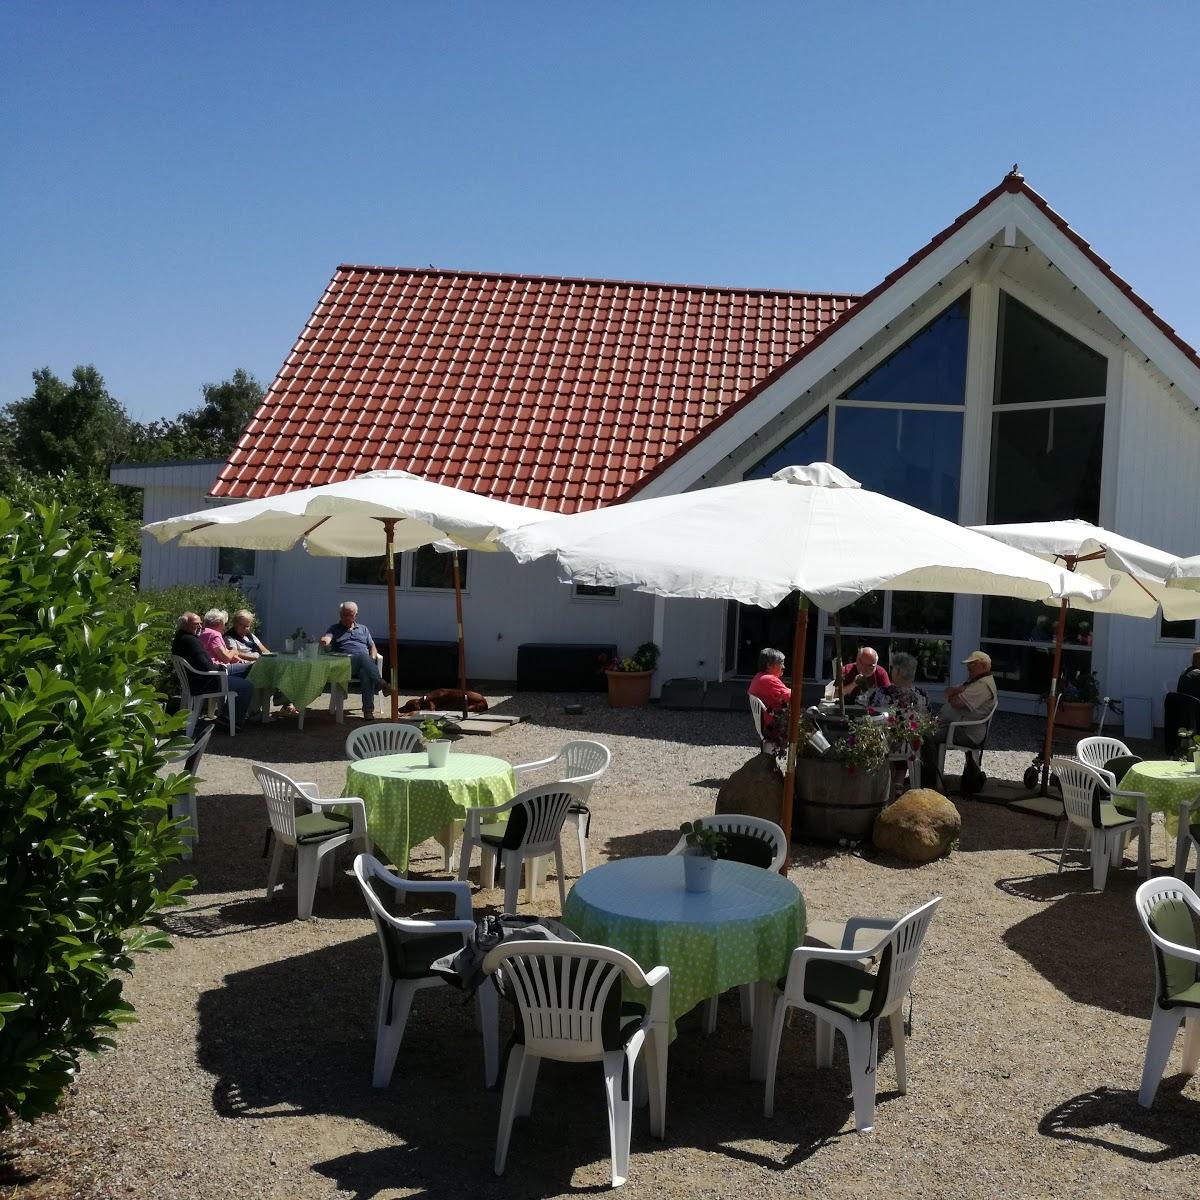 Restaurant "Café Großklützhöved" in Ostseebad Boltenhagen